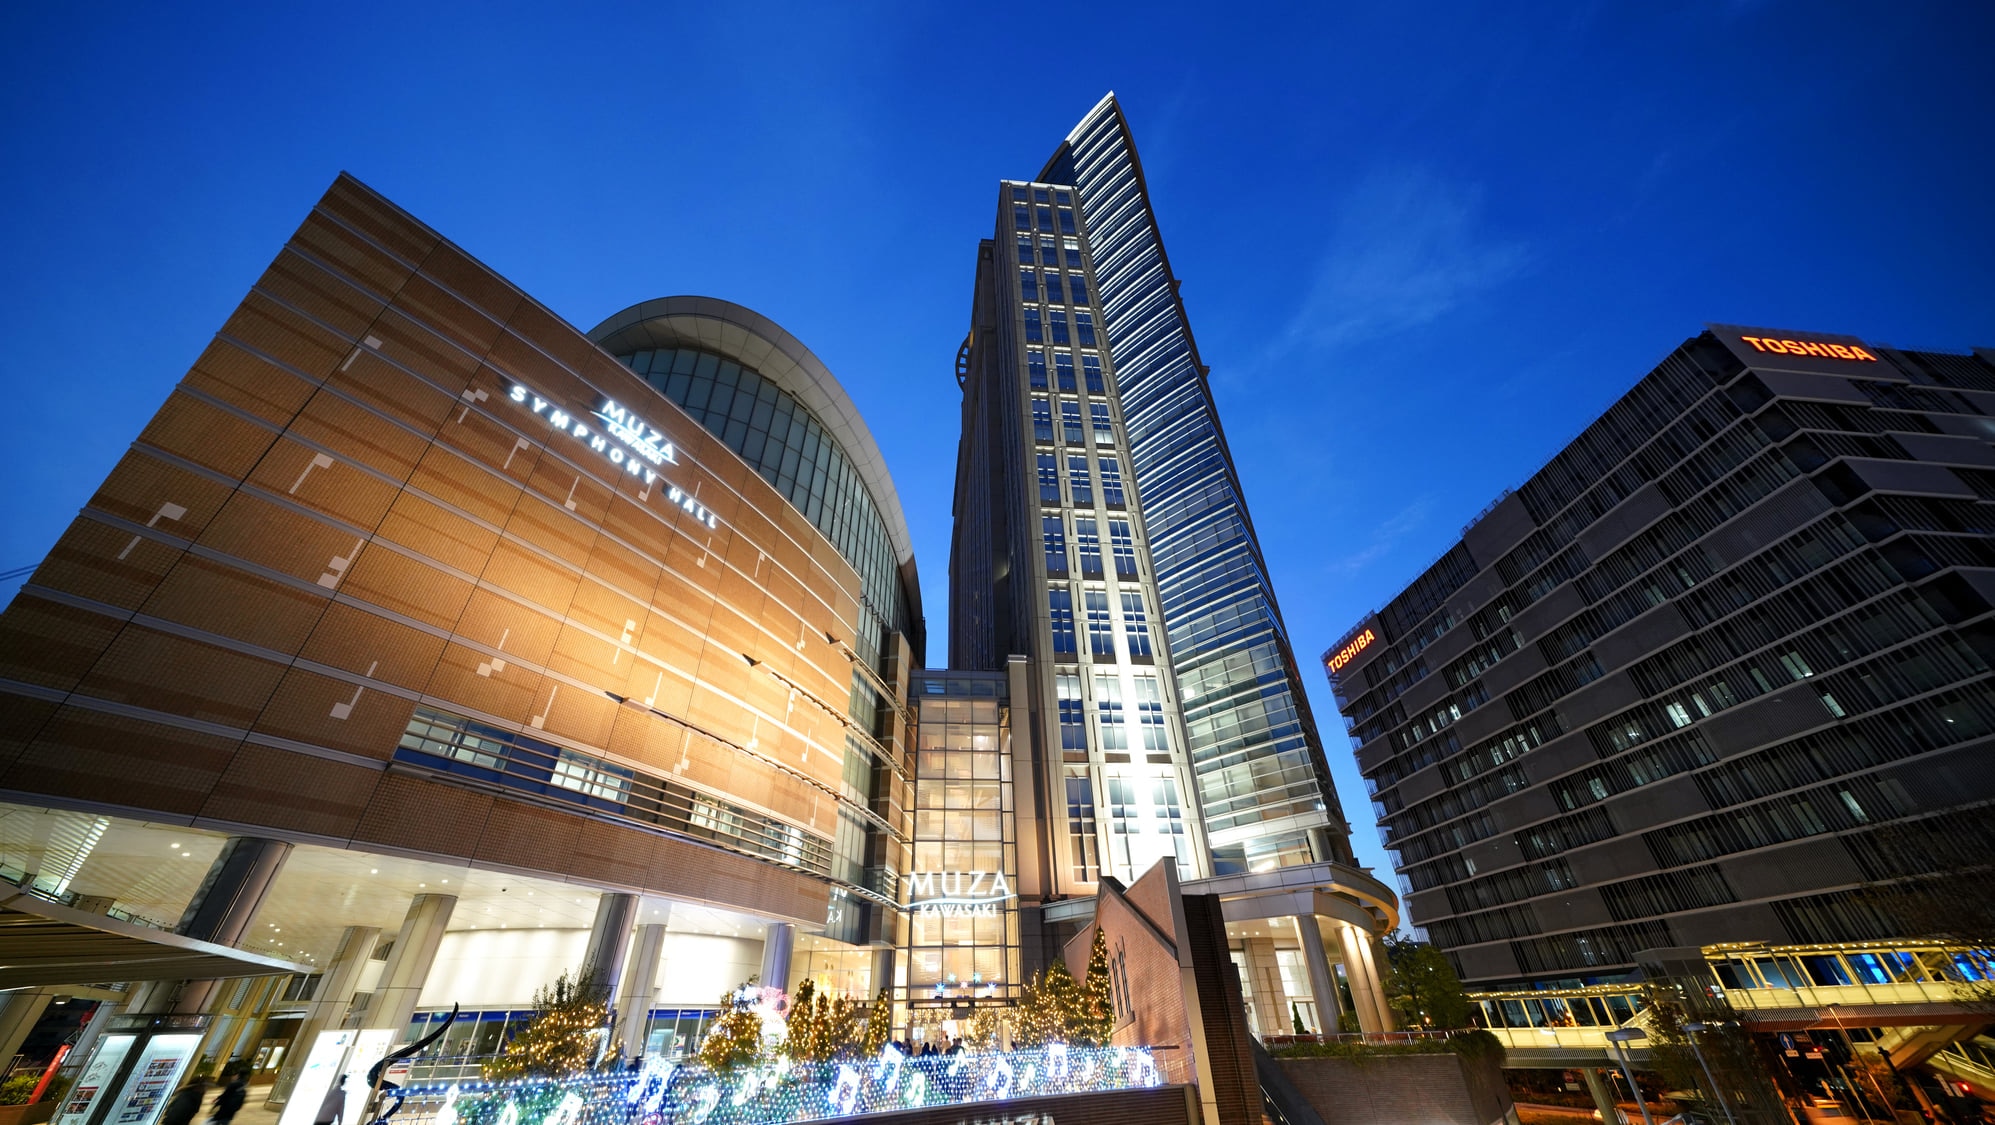 神奈川県 川崎でホテルを予約するならココ おすすめのホテル10選 Skyticket 観光ガイド